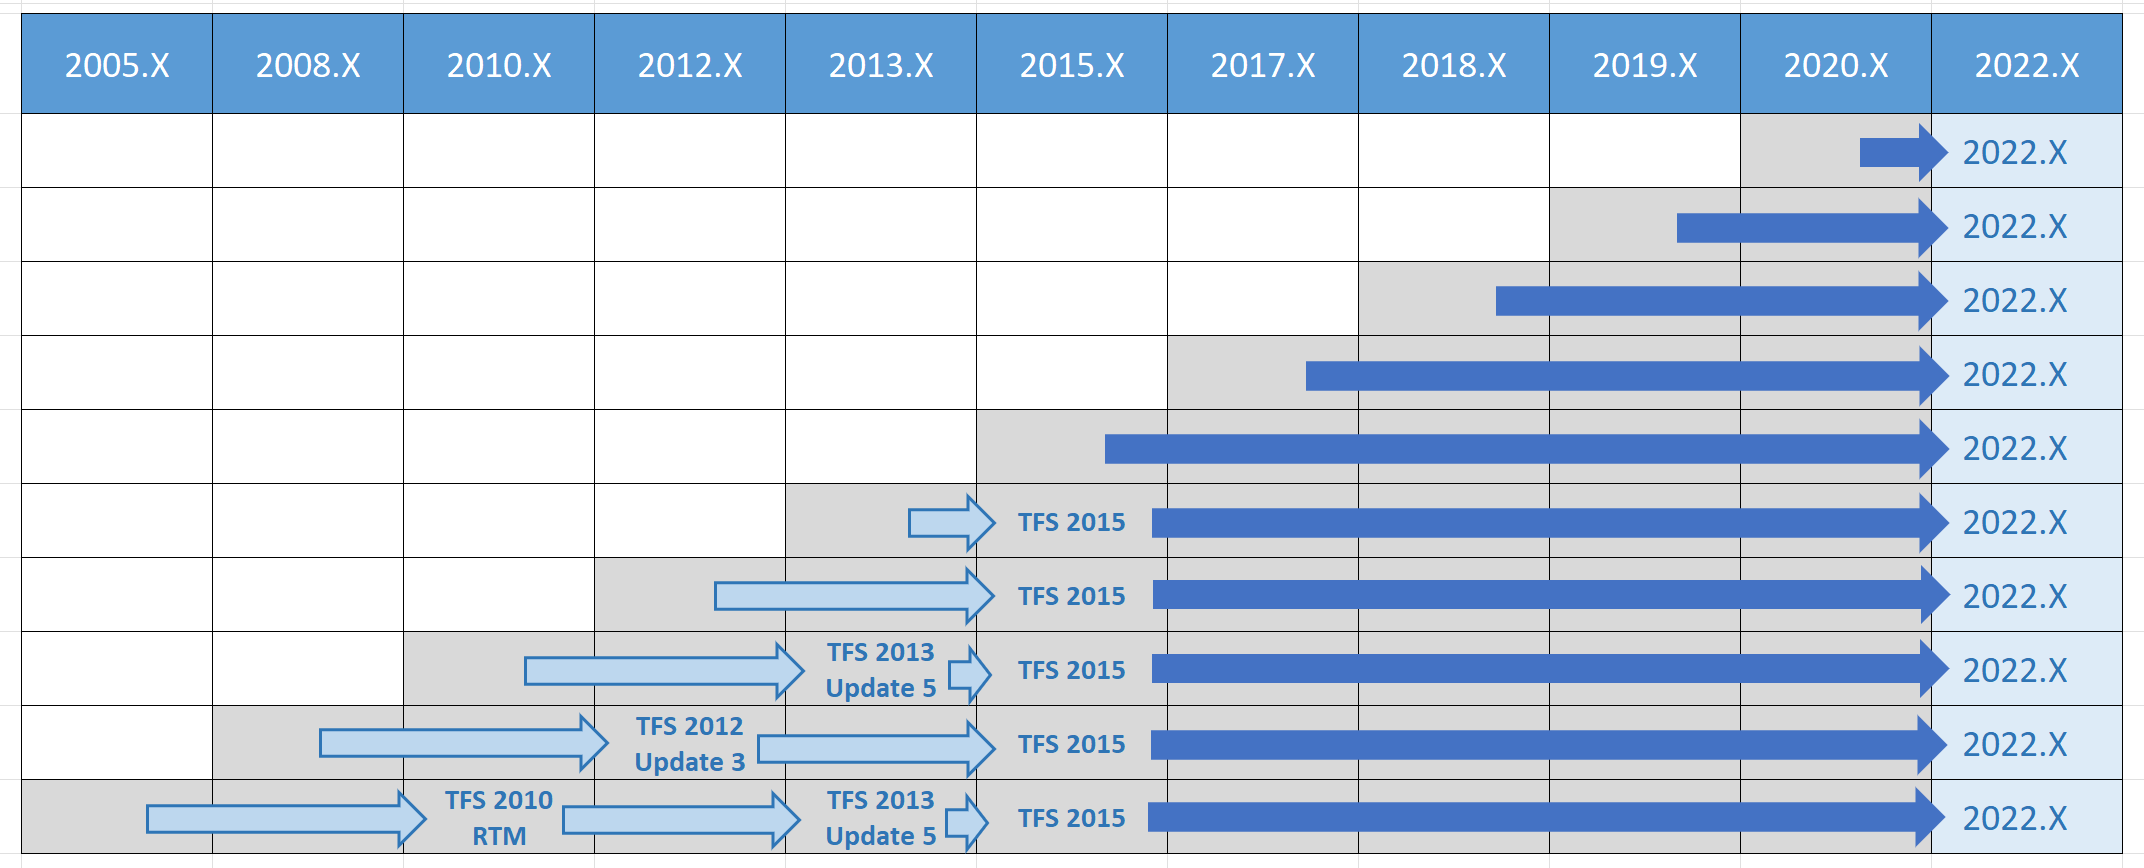 Таблица путей обновления Azure DevOps 2022 для всех предыдущих версий.